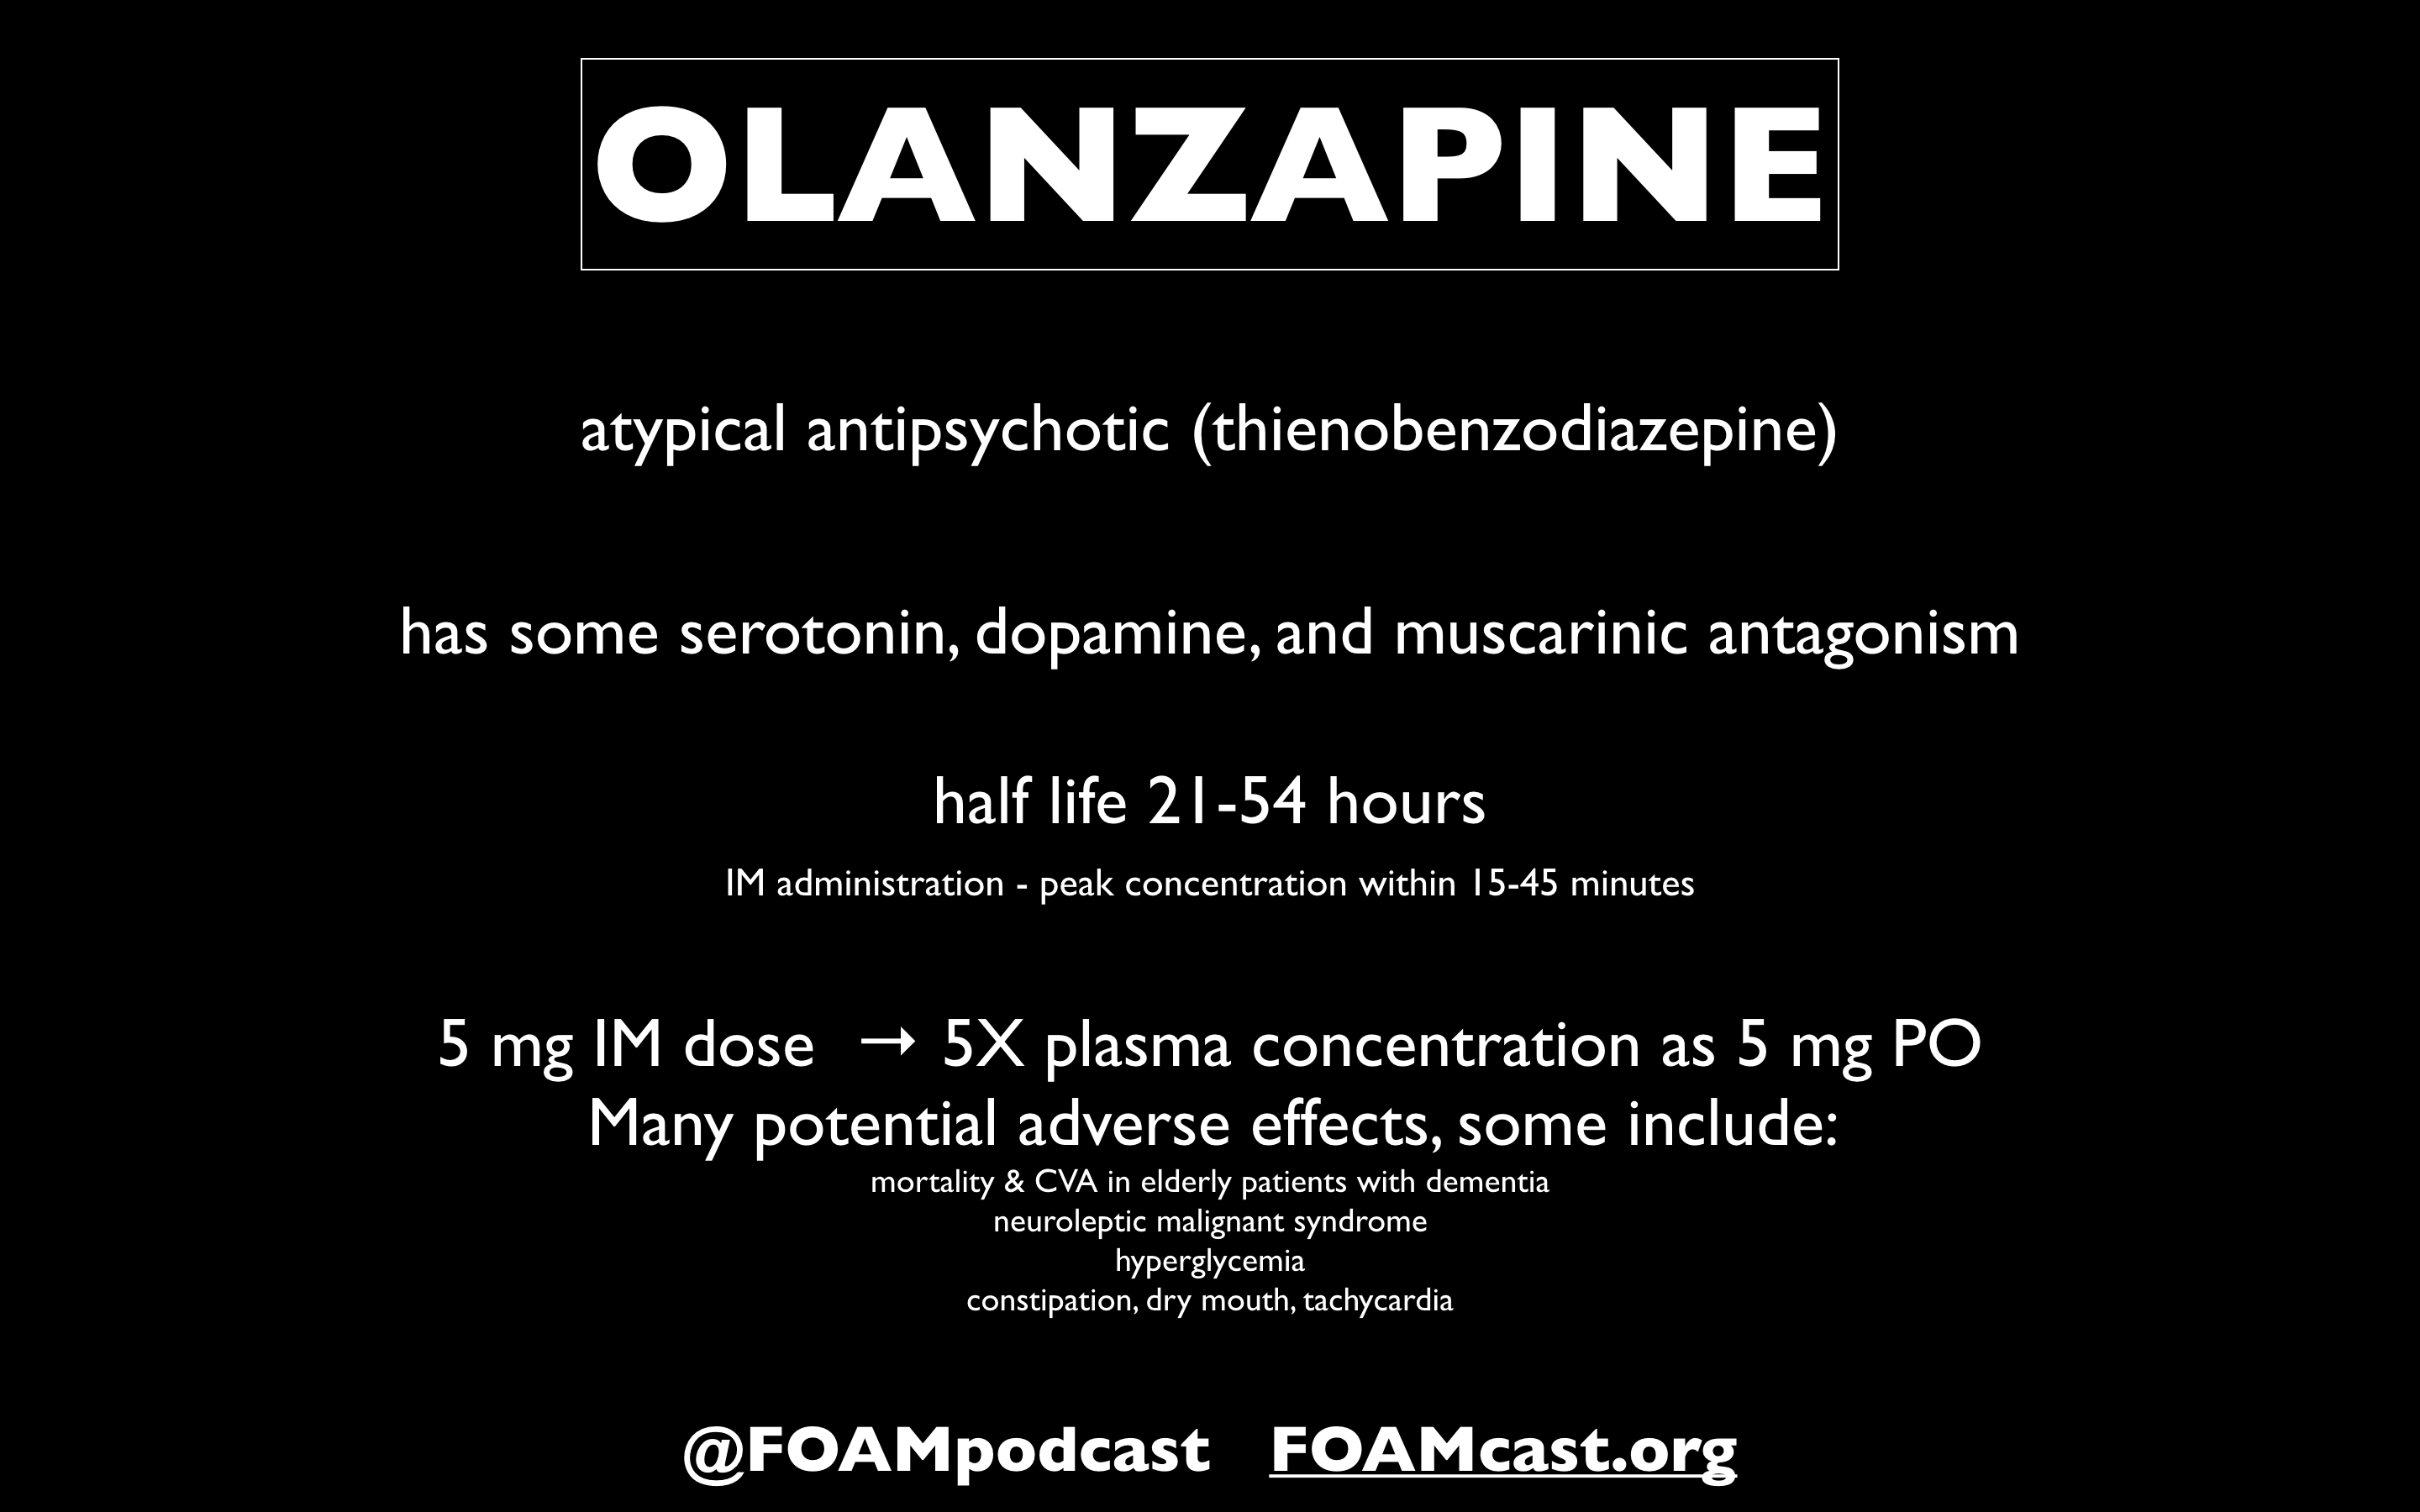 Is Olanzapine a Benzodiazepine?